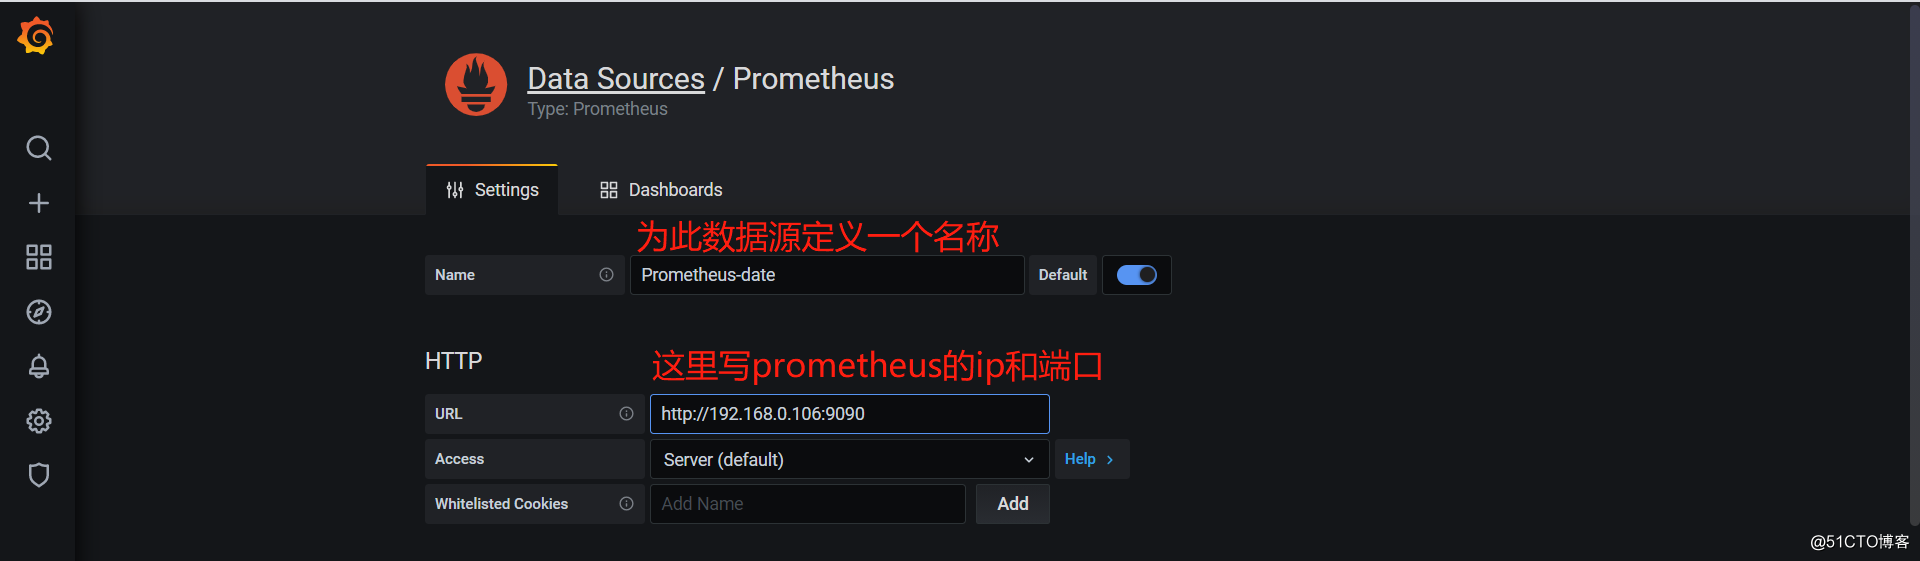 Instalação e uso do Prometheus